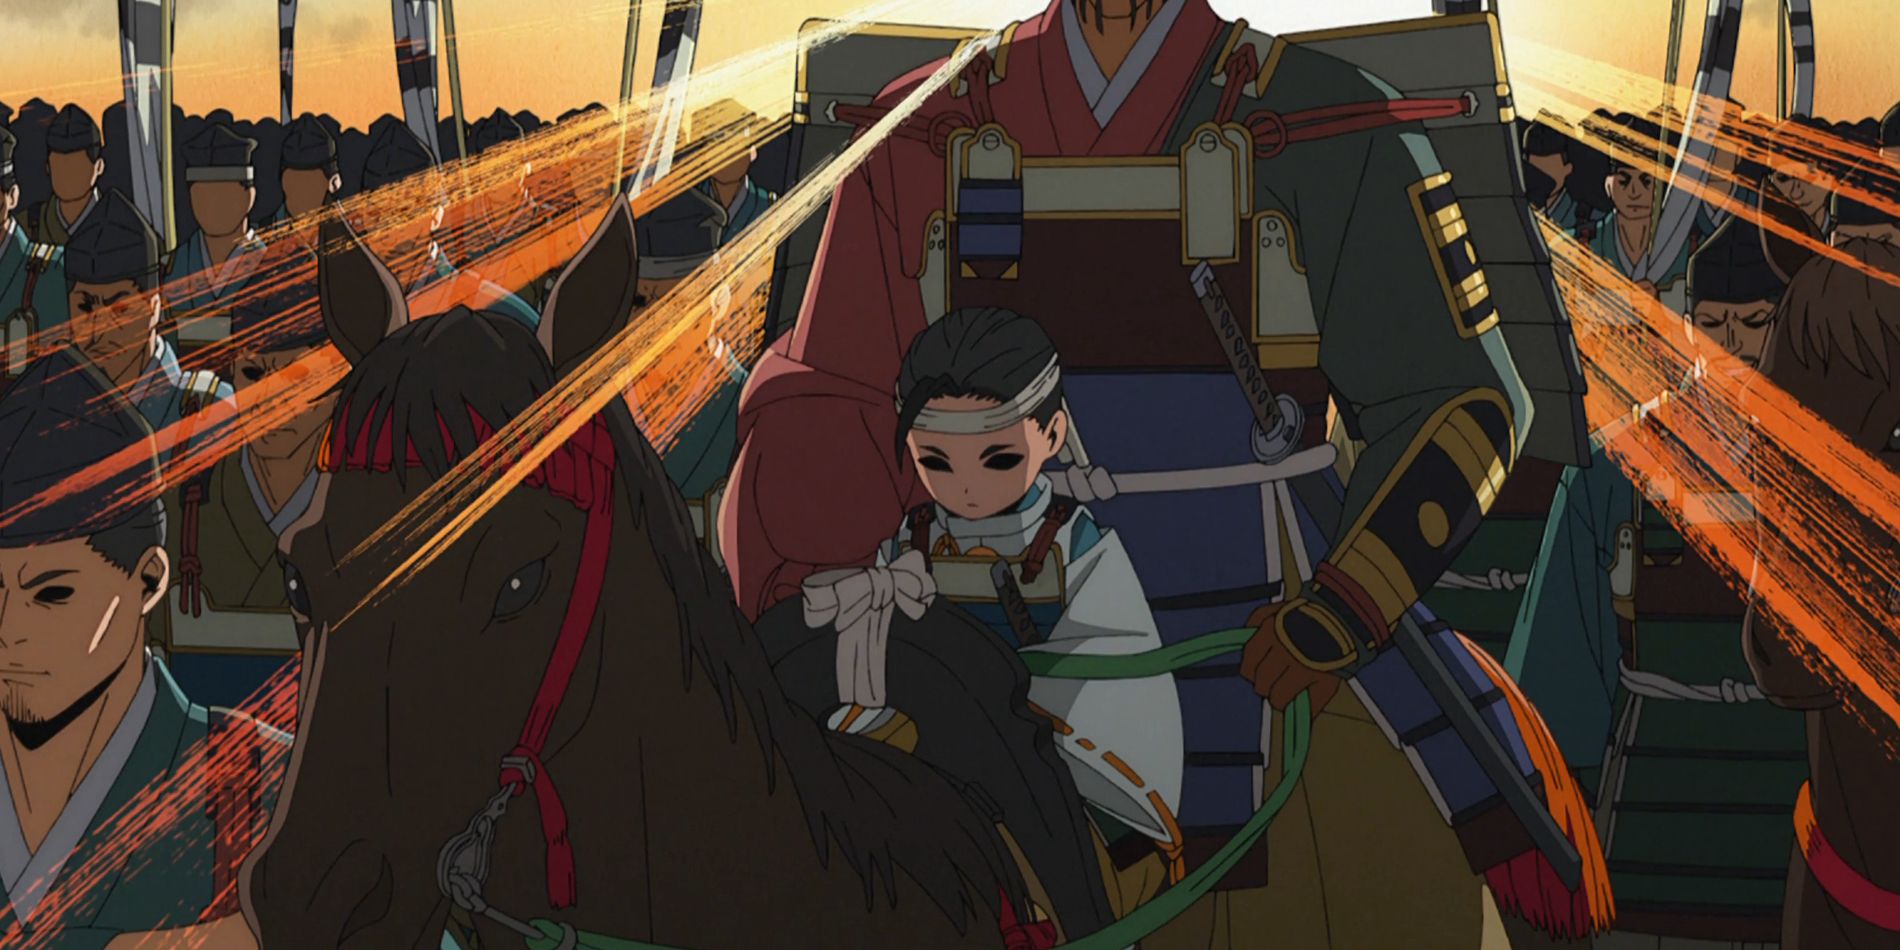 Tokiyuki quando criança em The Elusive Samurai